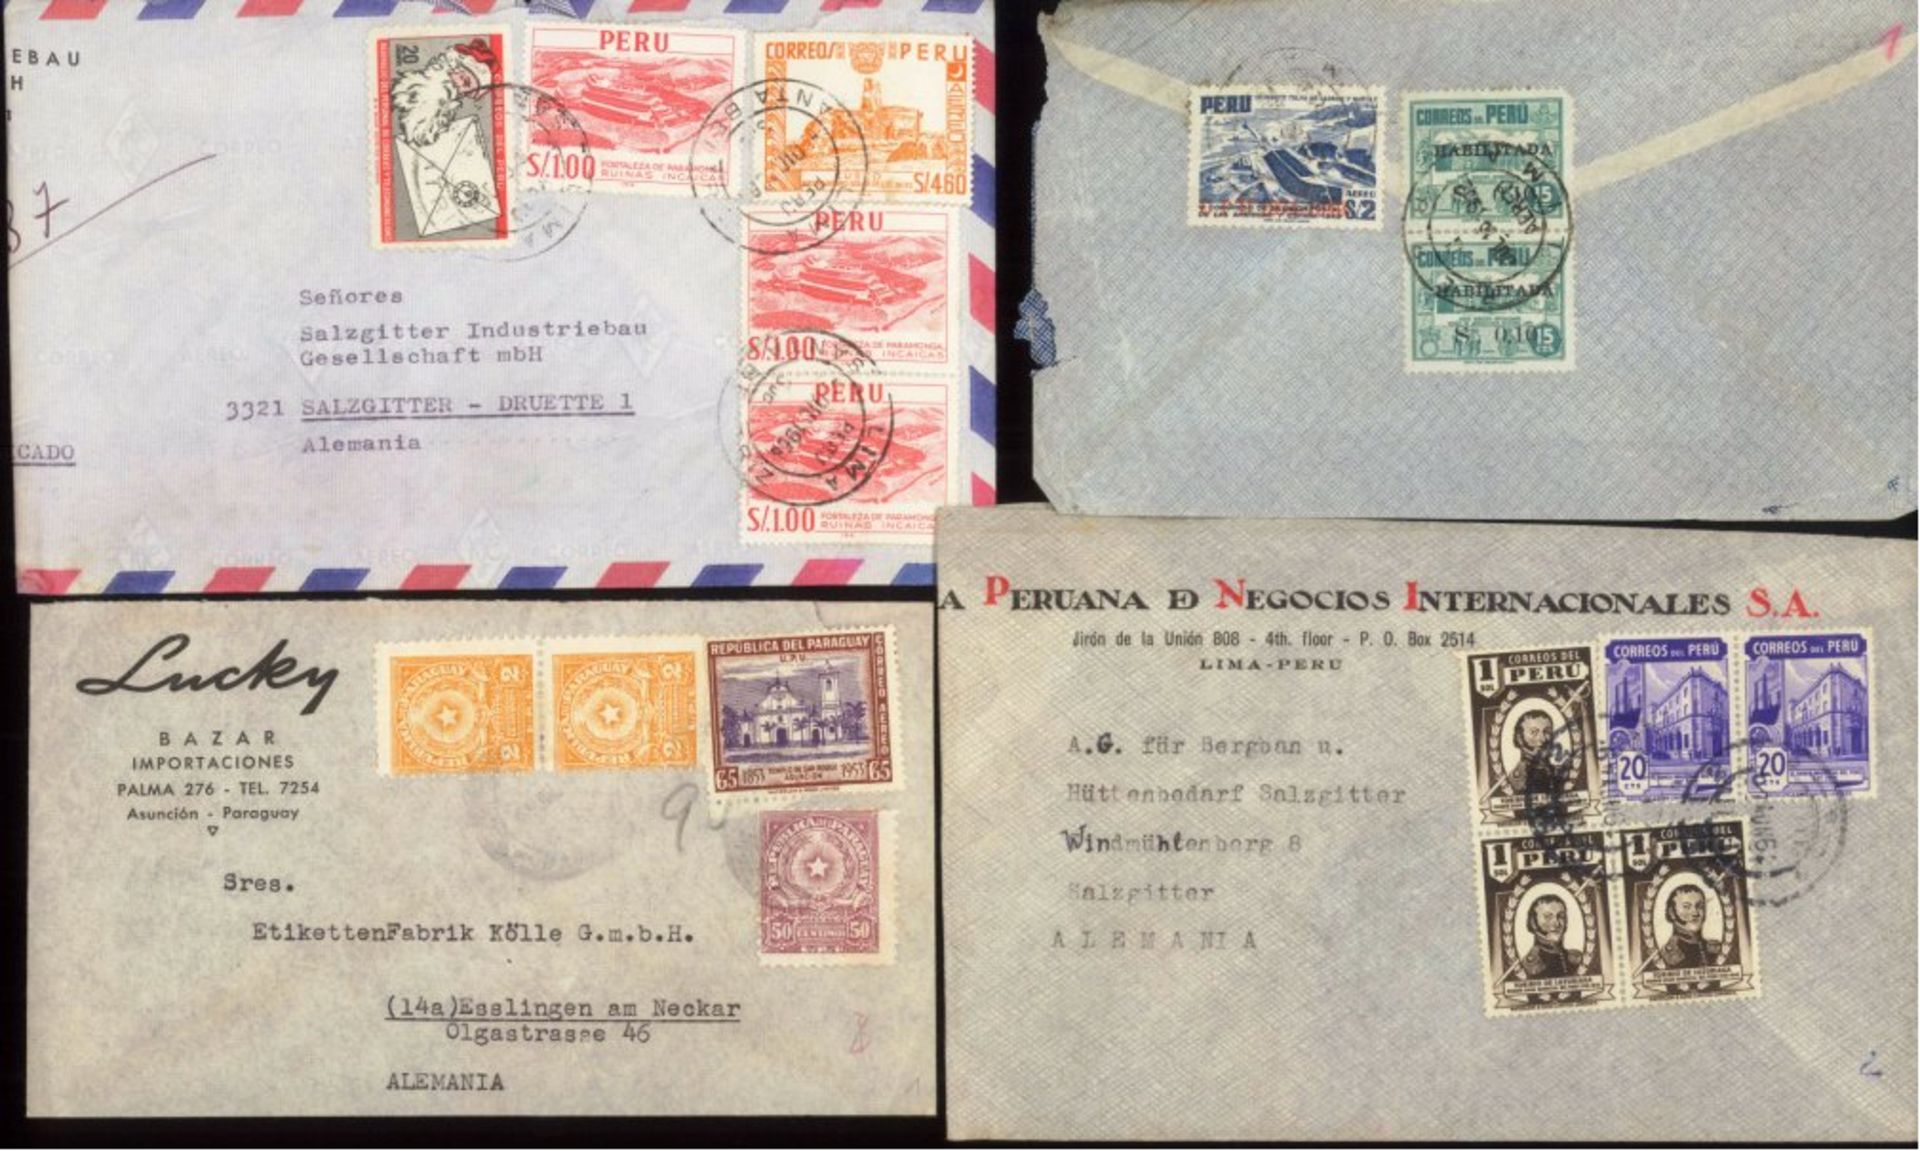 Peru, Bedarfsbriefe 1950, NICHT AUSGEGEBENgesamt 3 Stück, alle an die SALZGITTER AG, dabei